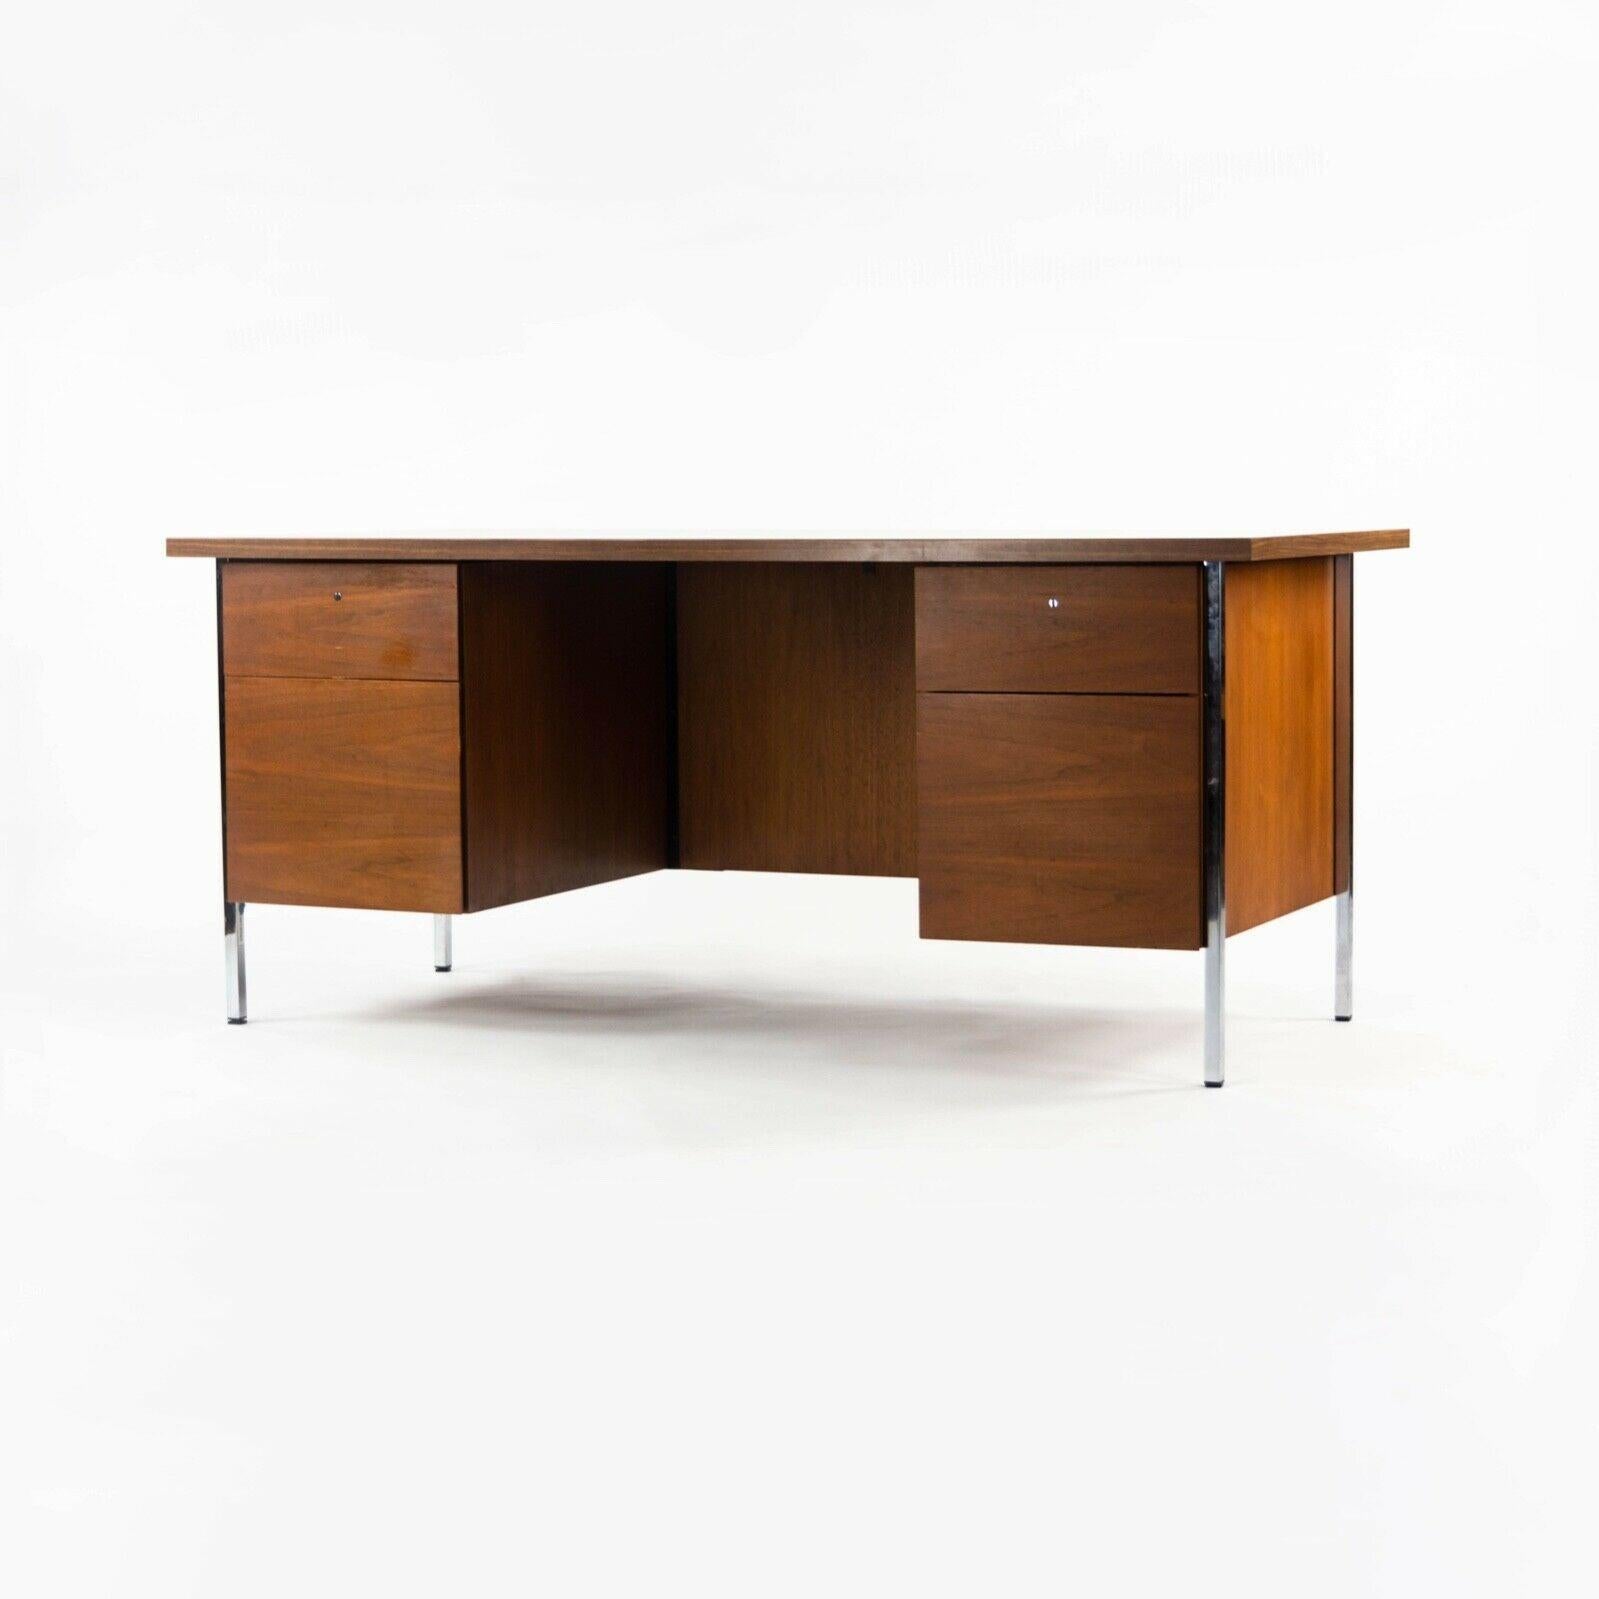 Zum Verkauf steht ein Doppelcontainer-Schreibtisch, Modell 1503, entworfen von Florence Knoll und hergestellt von Knoll Associates. Es handelt sich um ein originales Exemplar aus den späten 1950er Jahren. Die Türen, die Seiten und die Rückseite sind